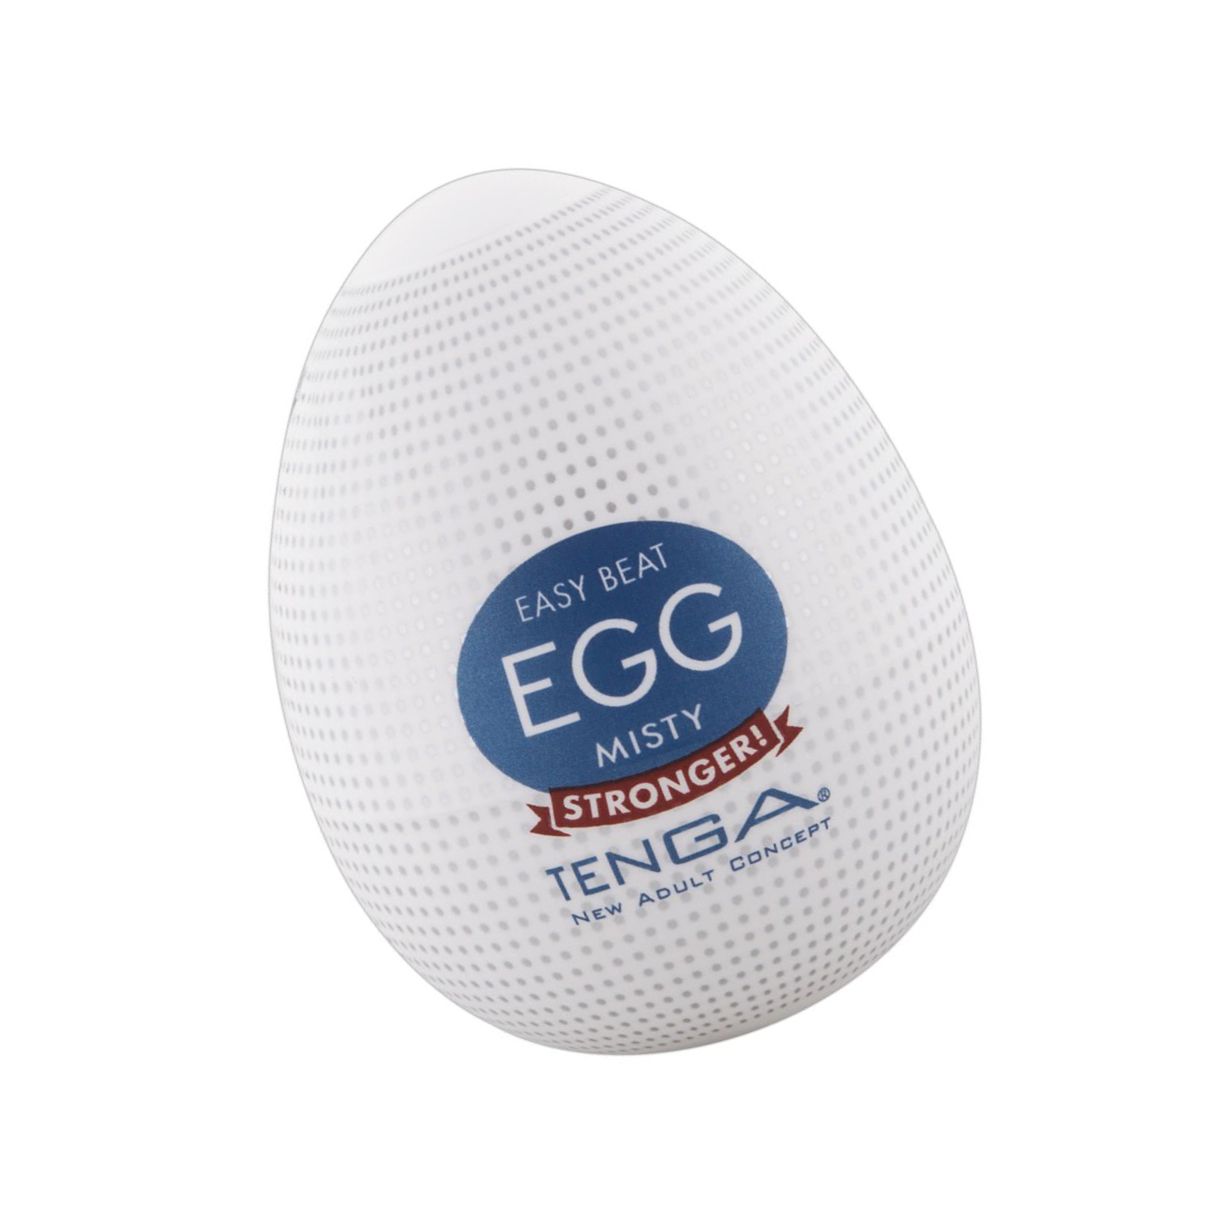 Egg Misty Single Transparent